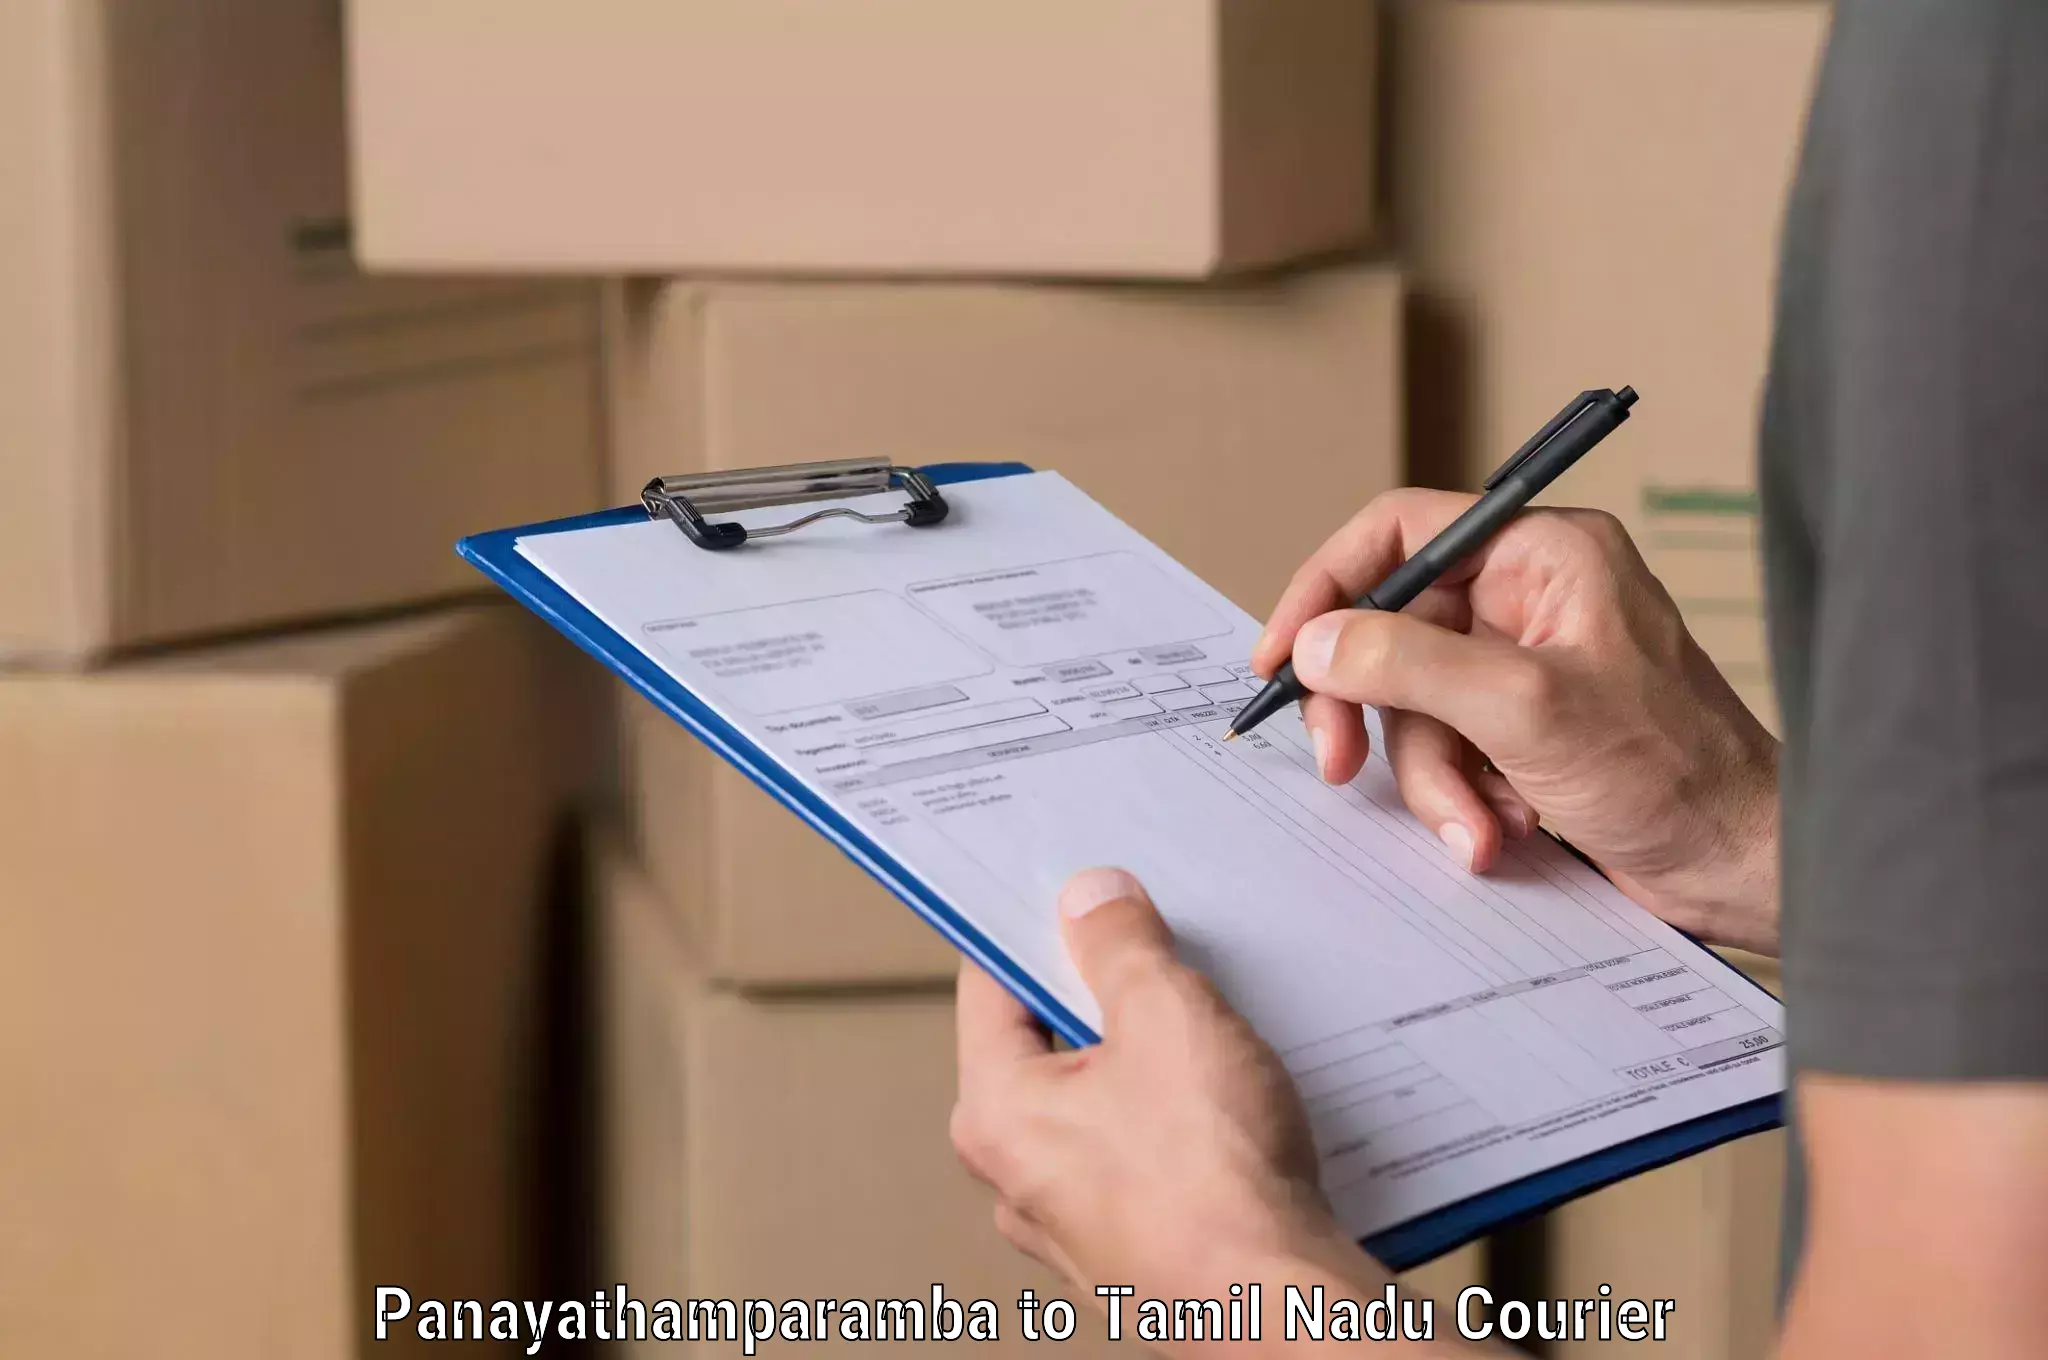 Supply chain delivery Panayathamparamba to Thiruvadanai